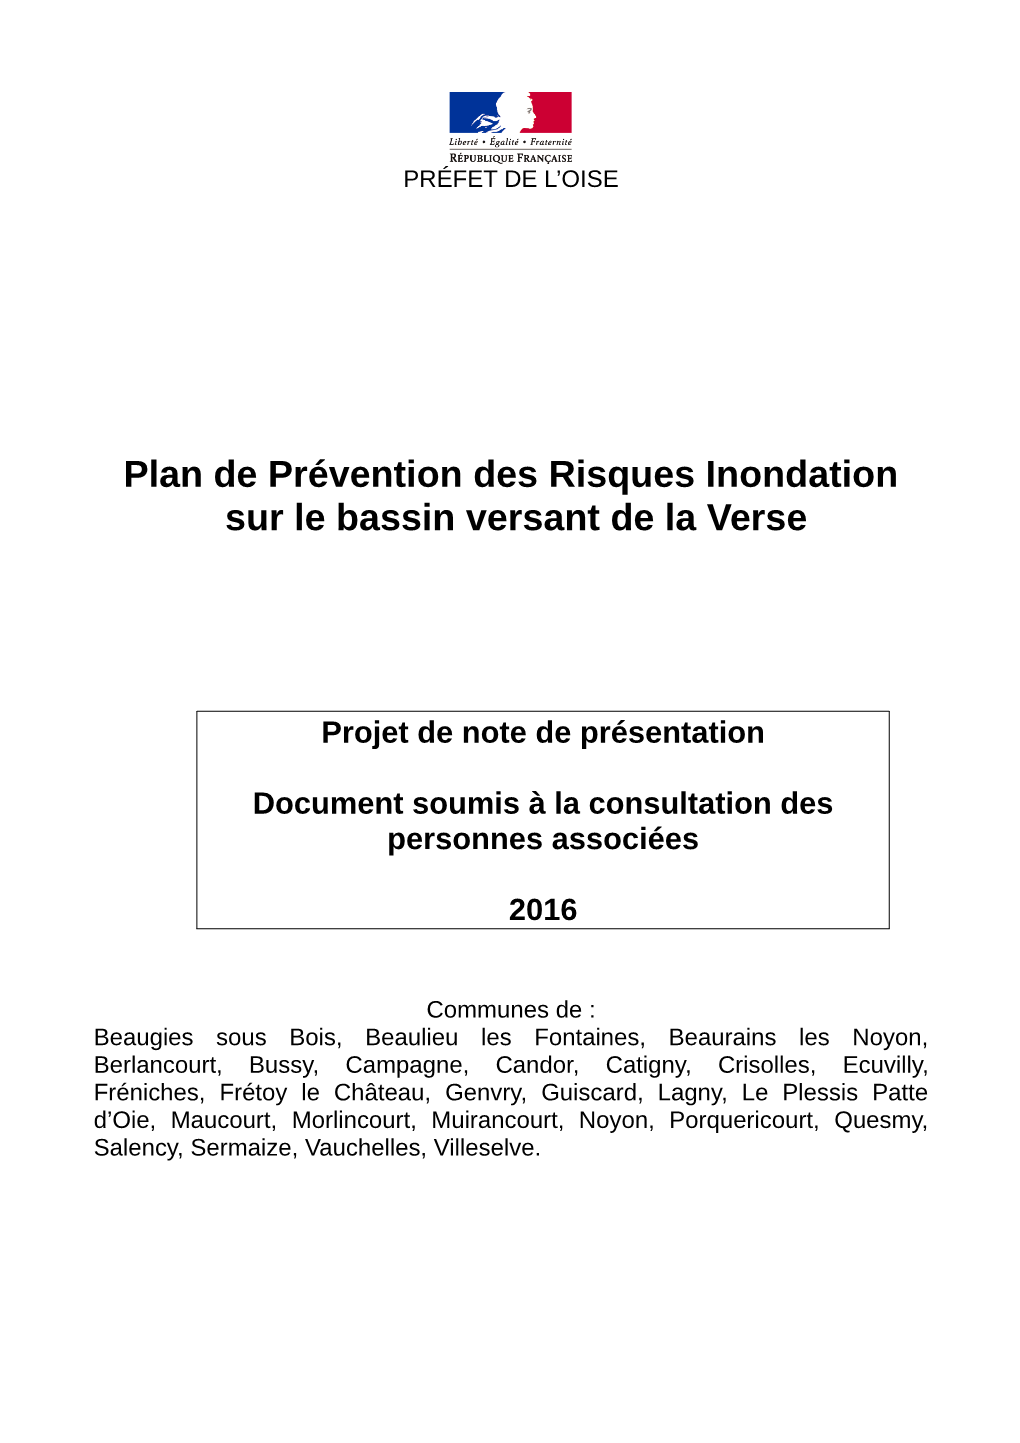 Plan De Prévention Des Risques Inondation Sur Le Bassin Versant De La Verse